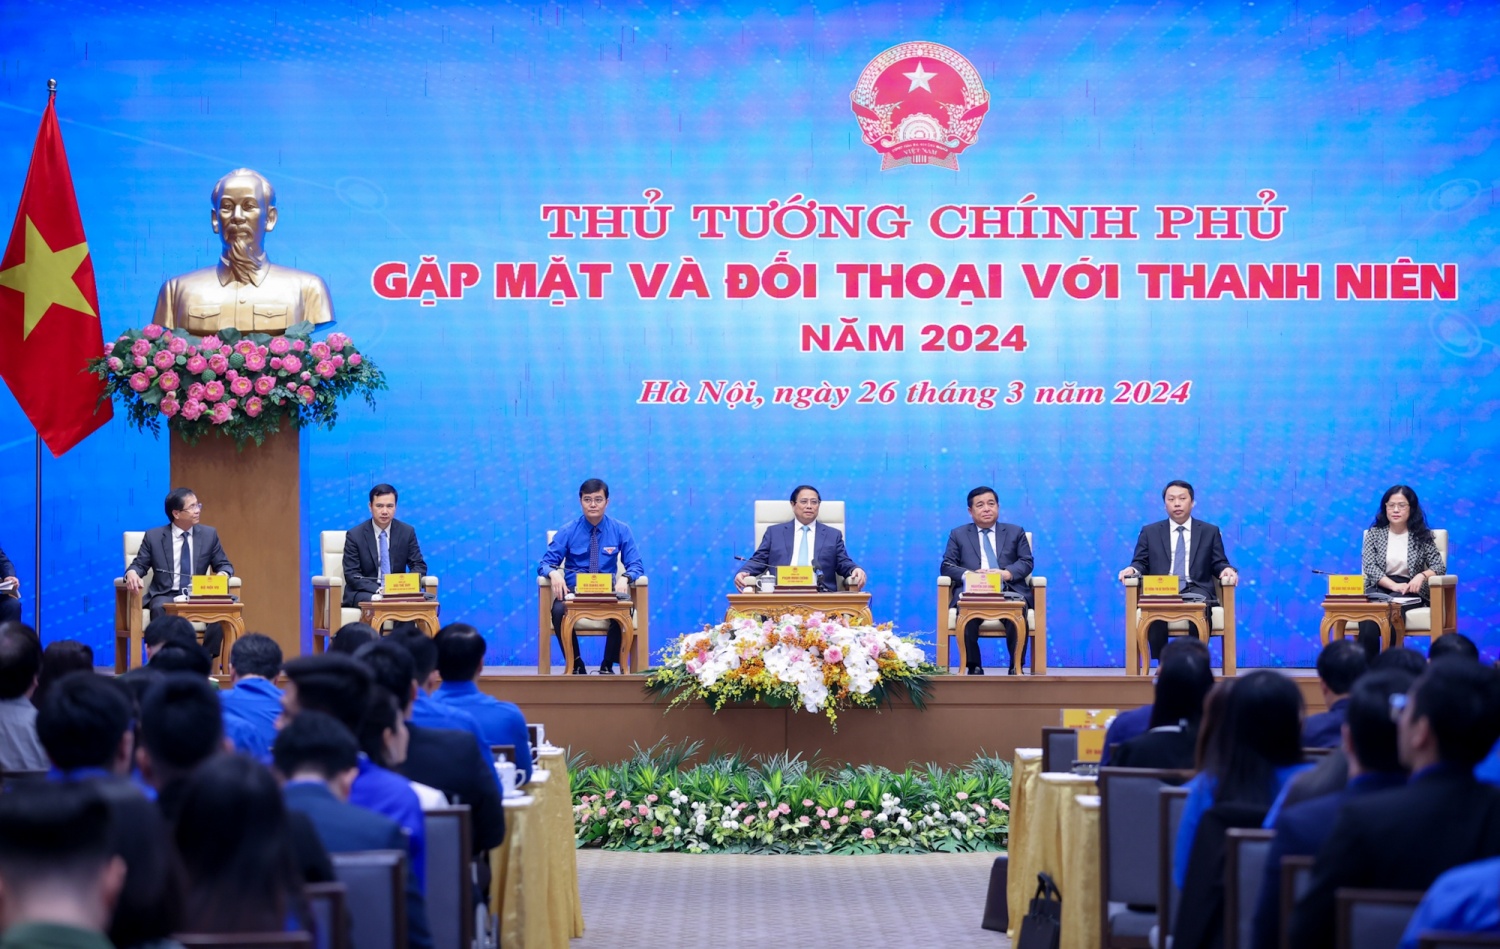 Thủ tướng Phạm Minh Chính chủ trì Hội nghị gặp mặt và đối thoại với thanh niên - Ảnh: VGP/Nhật Bắc